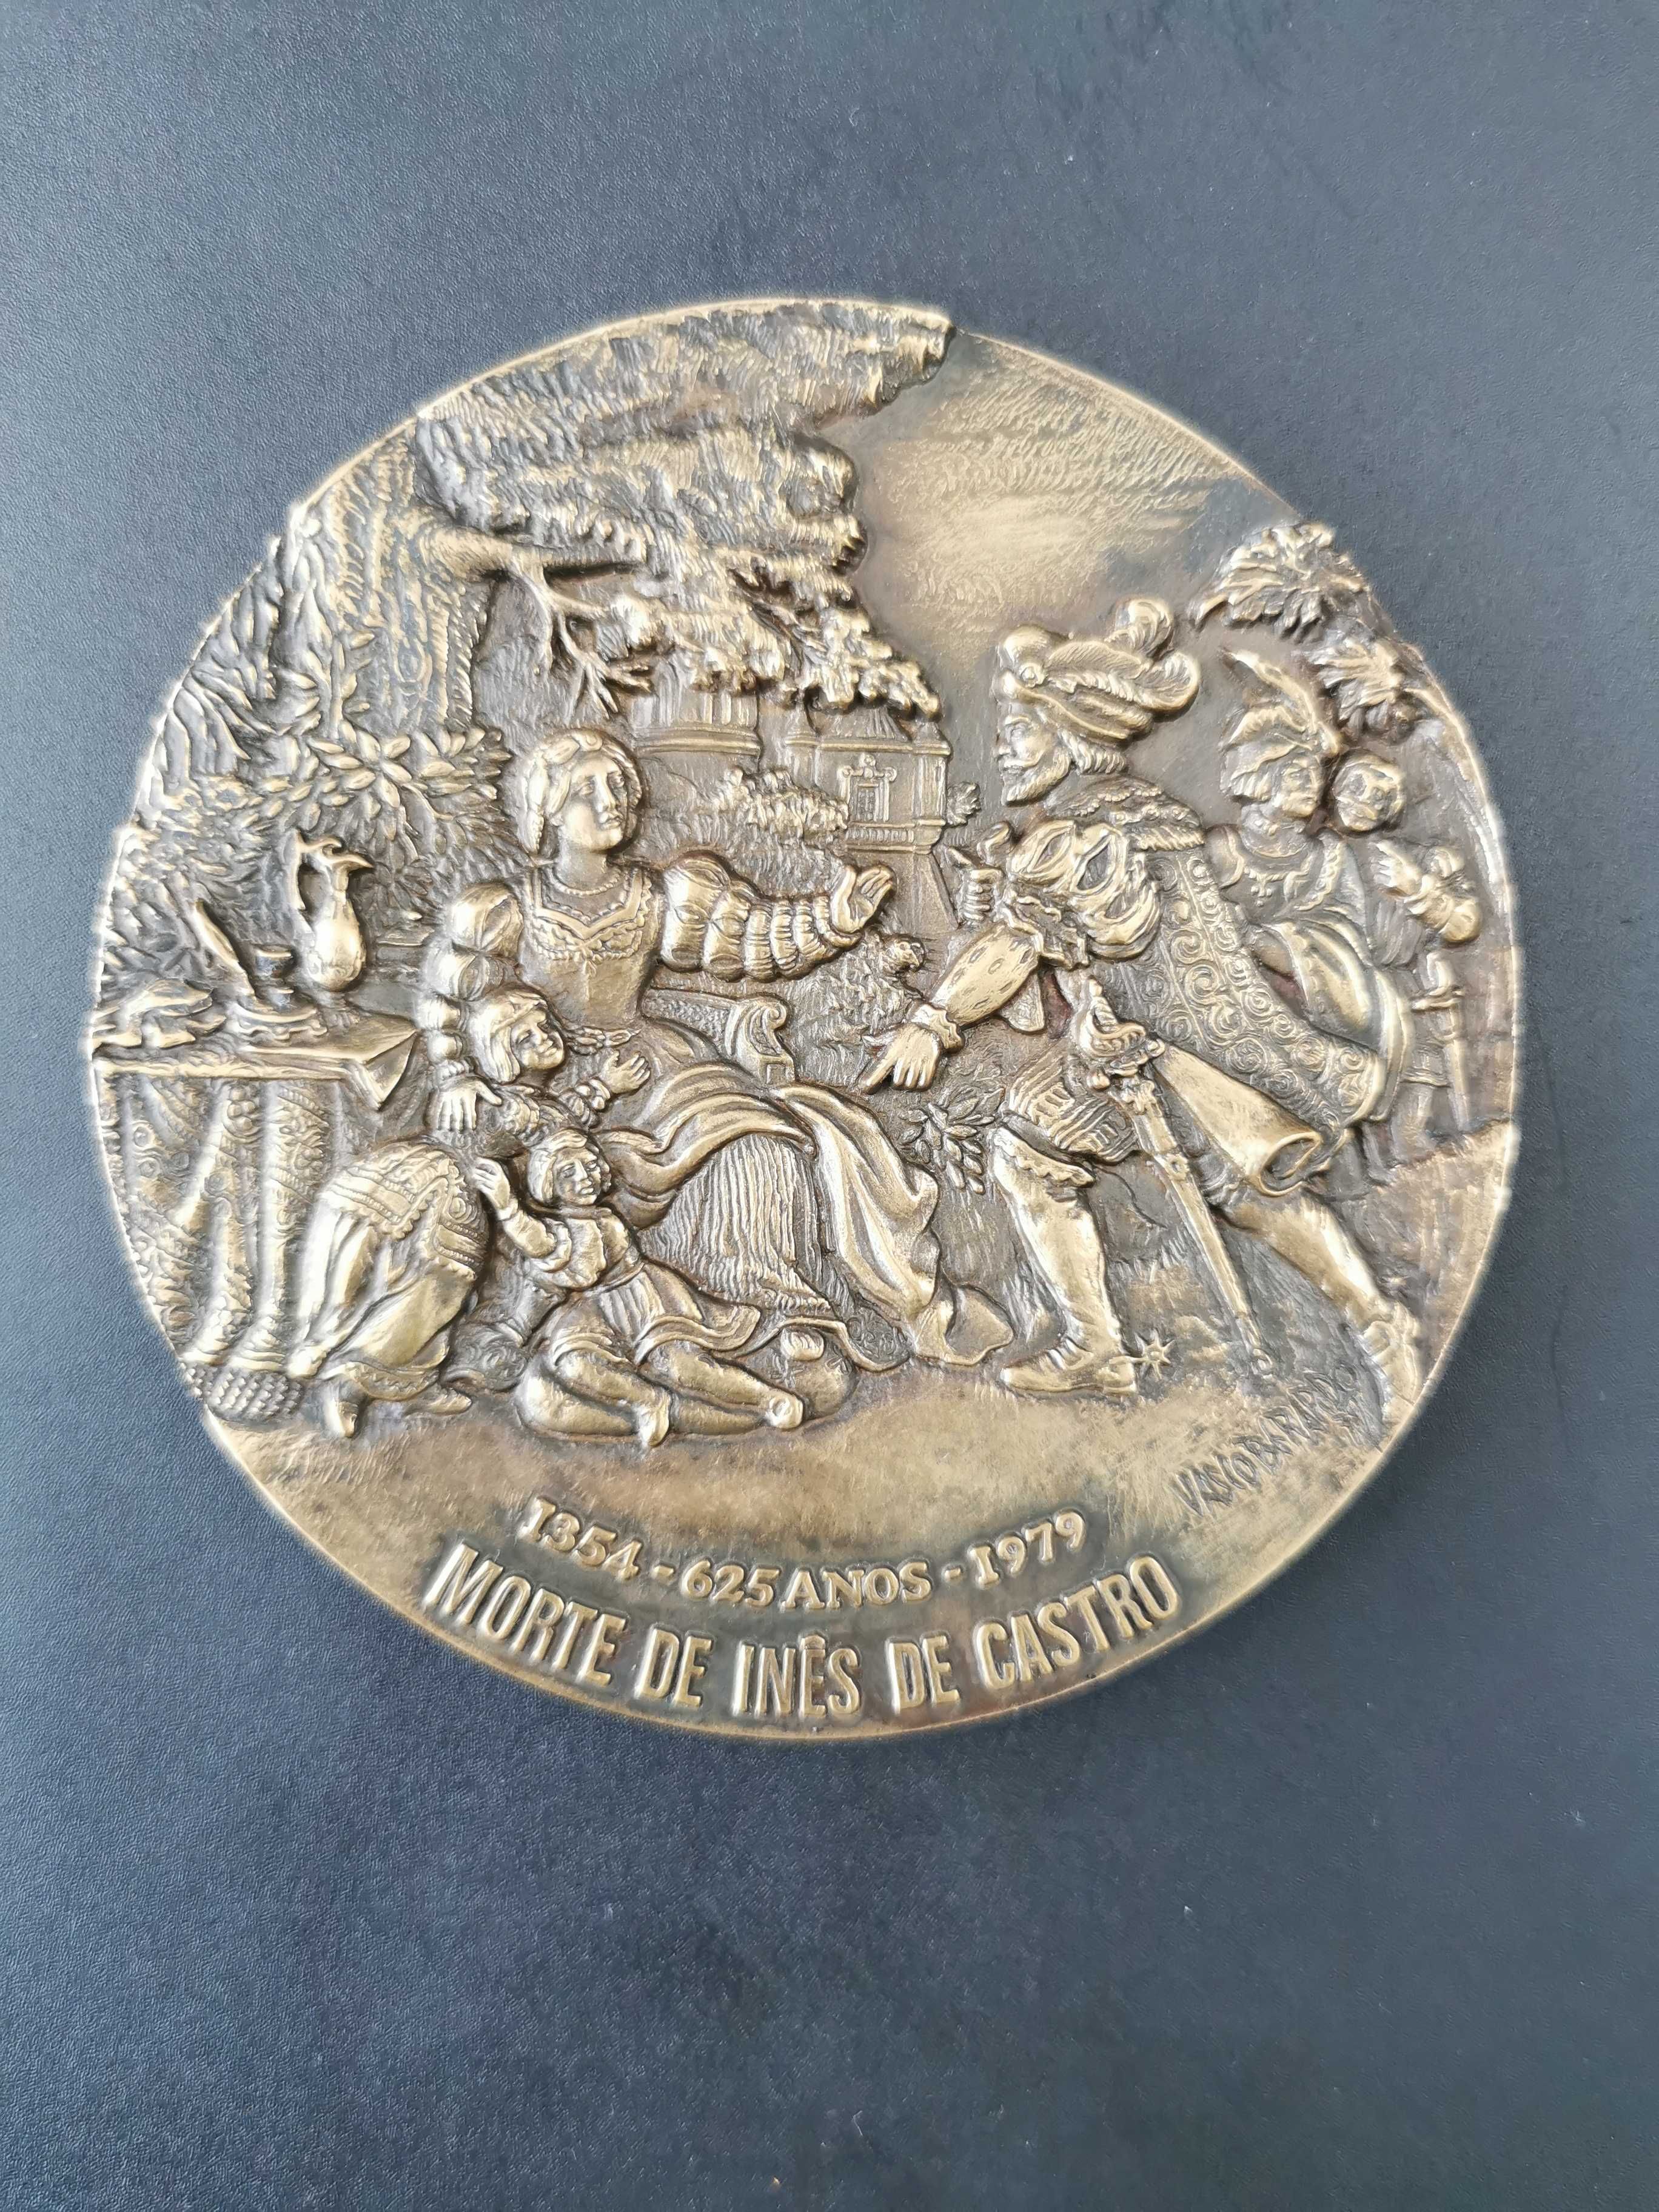 Medalha de Bronze da Morte de Inês de Castro - Portugal